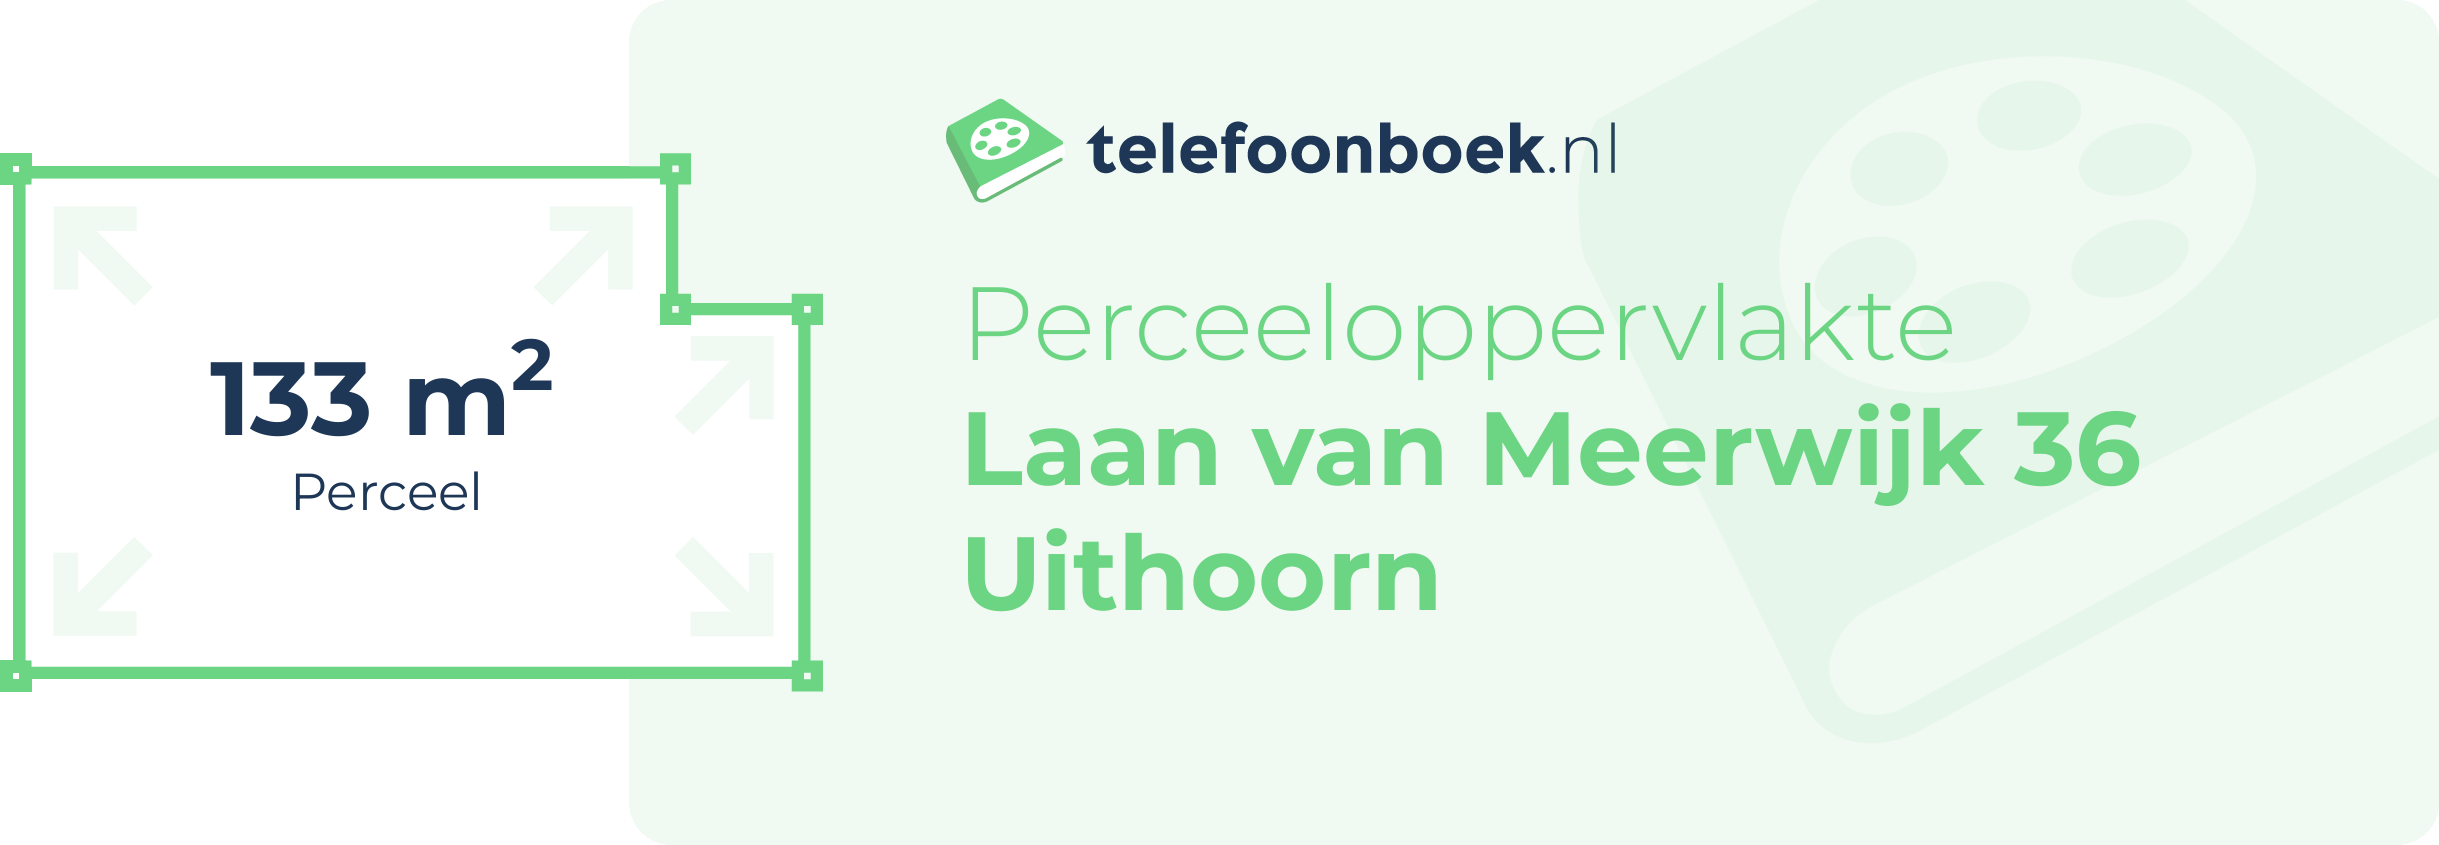 Perceeloppervlakte Laan Van Meerwijk 36 Uithoorn